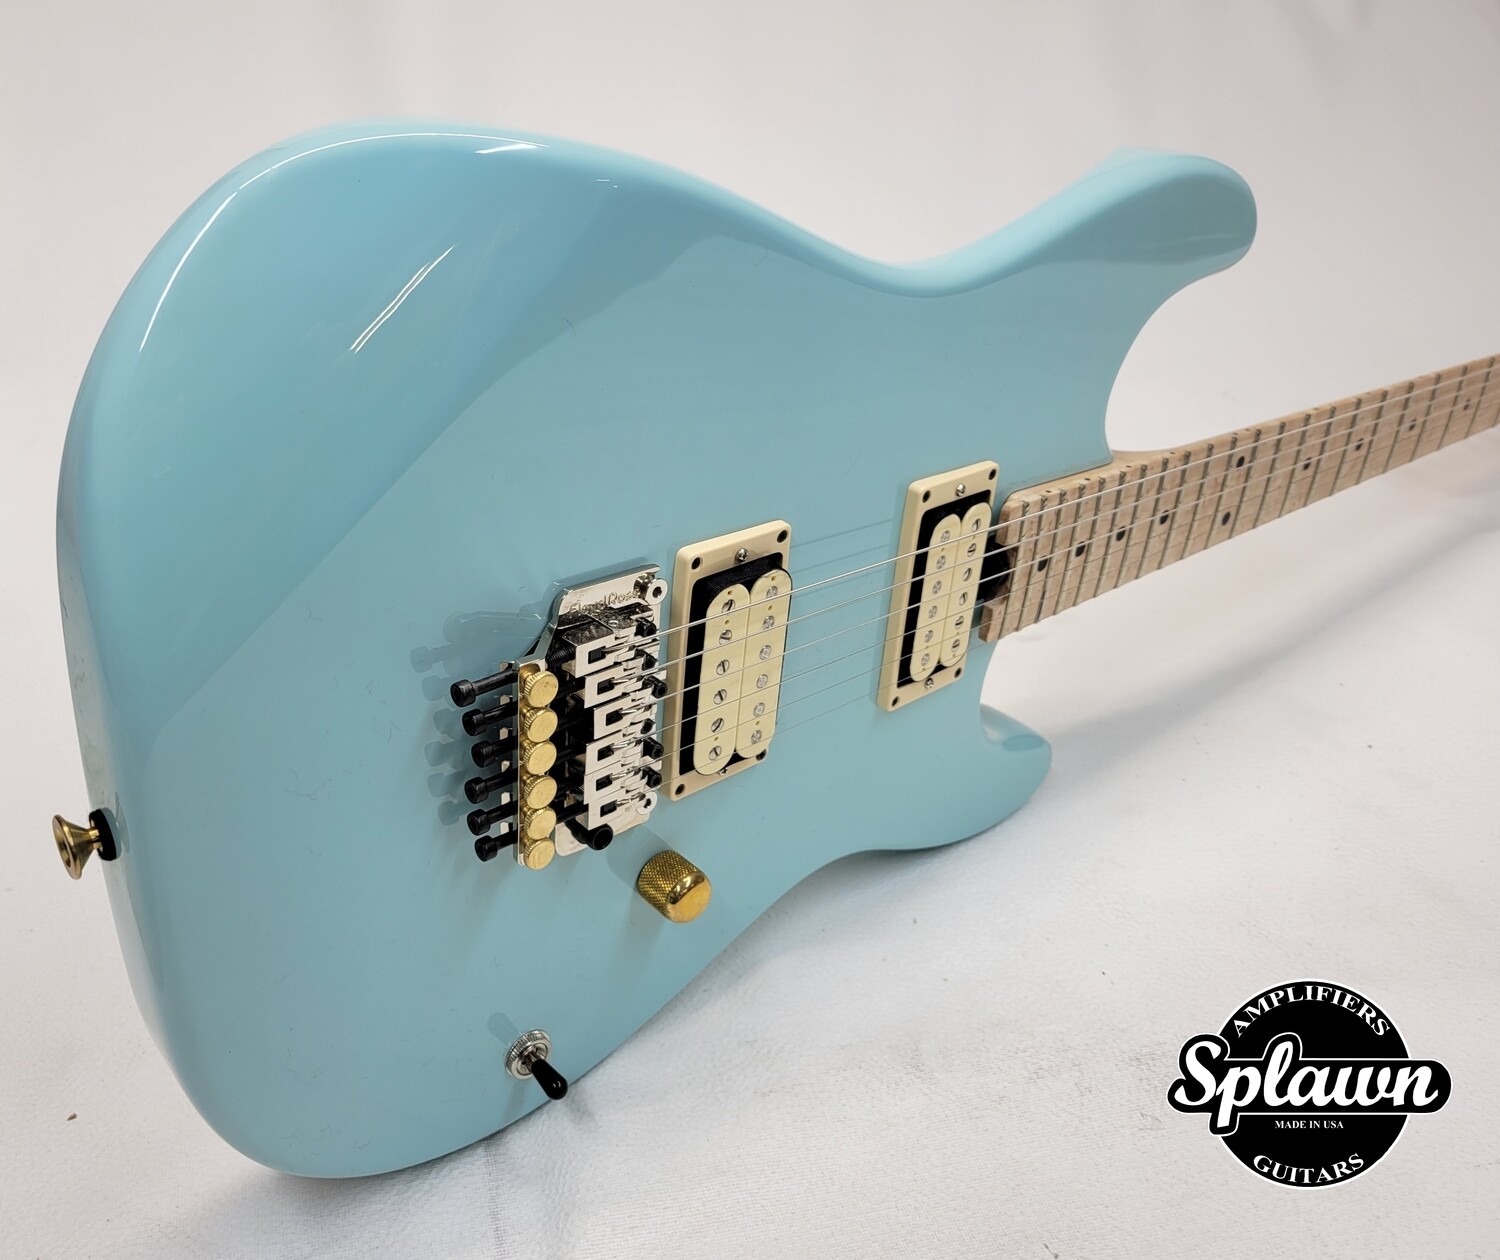 Splawn SS1 Guitar Daphne Blue